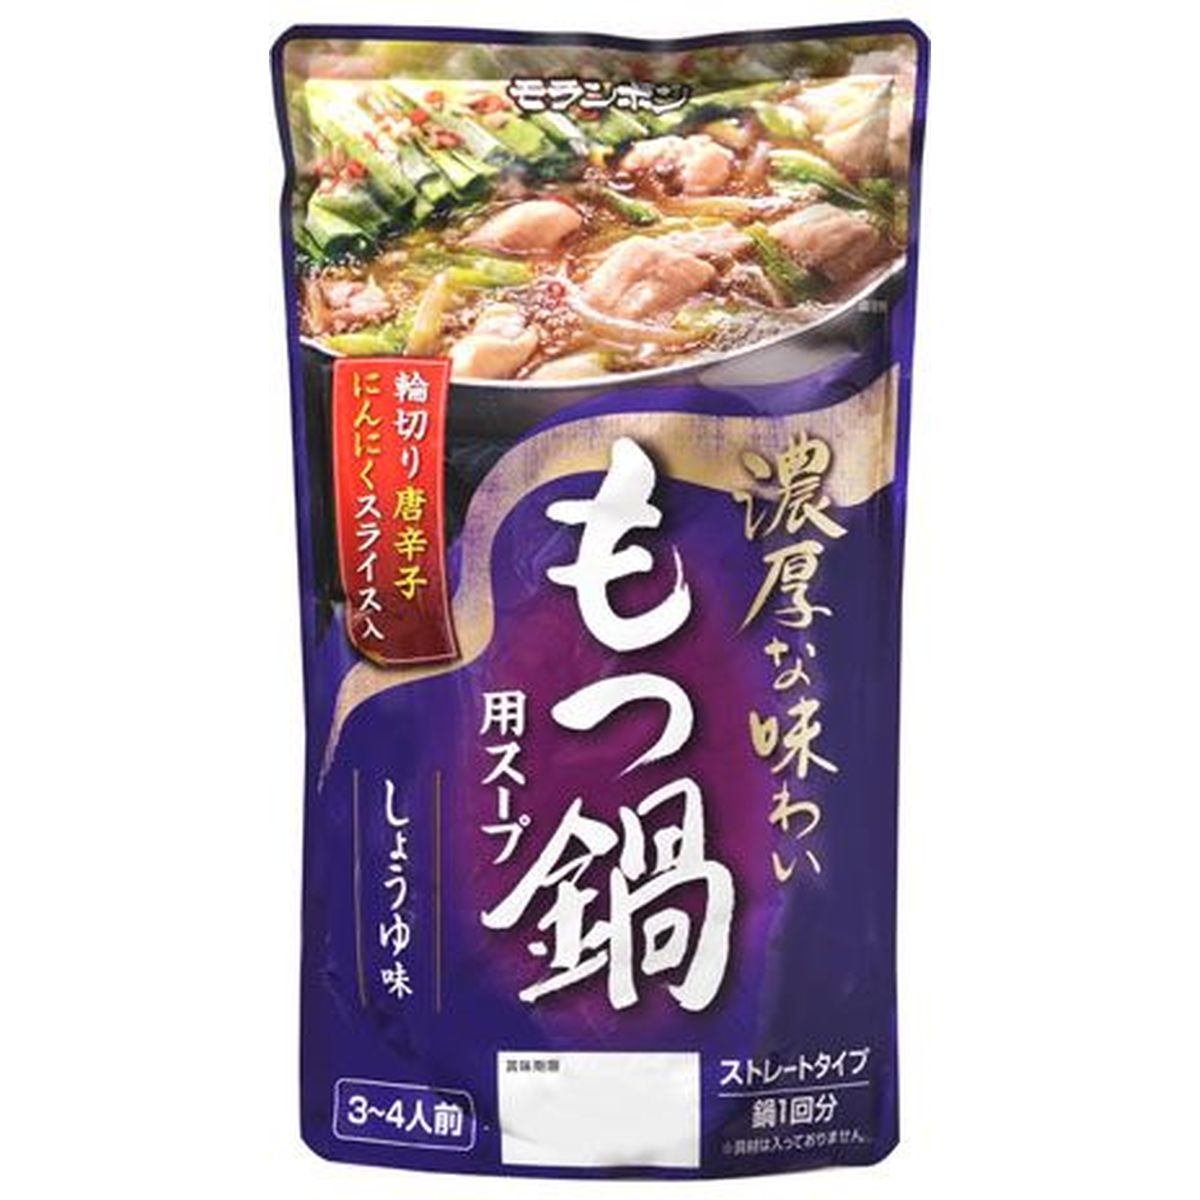 【10個入リ】モランボン モツ鍋用スープ 醤油味 750g